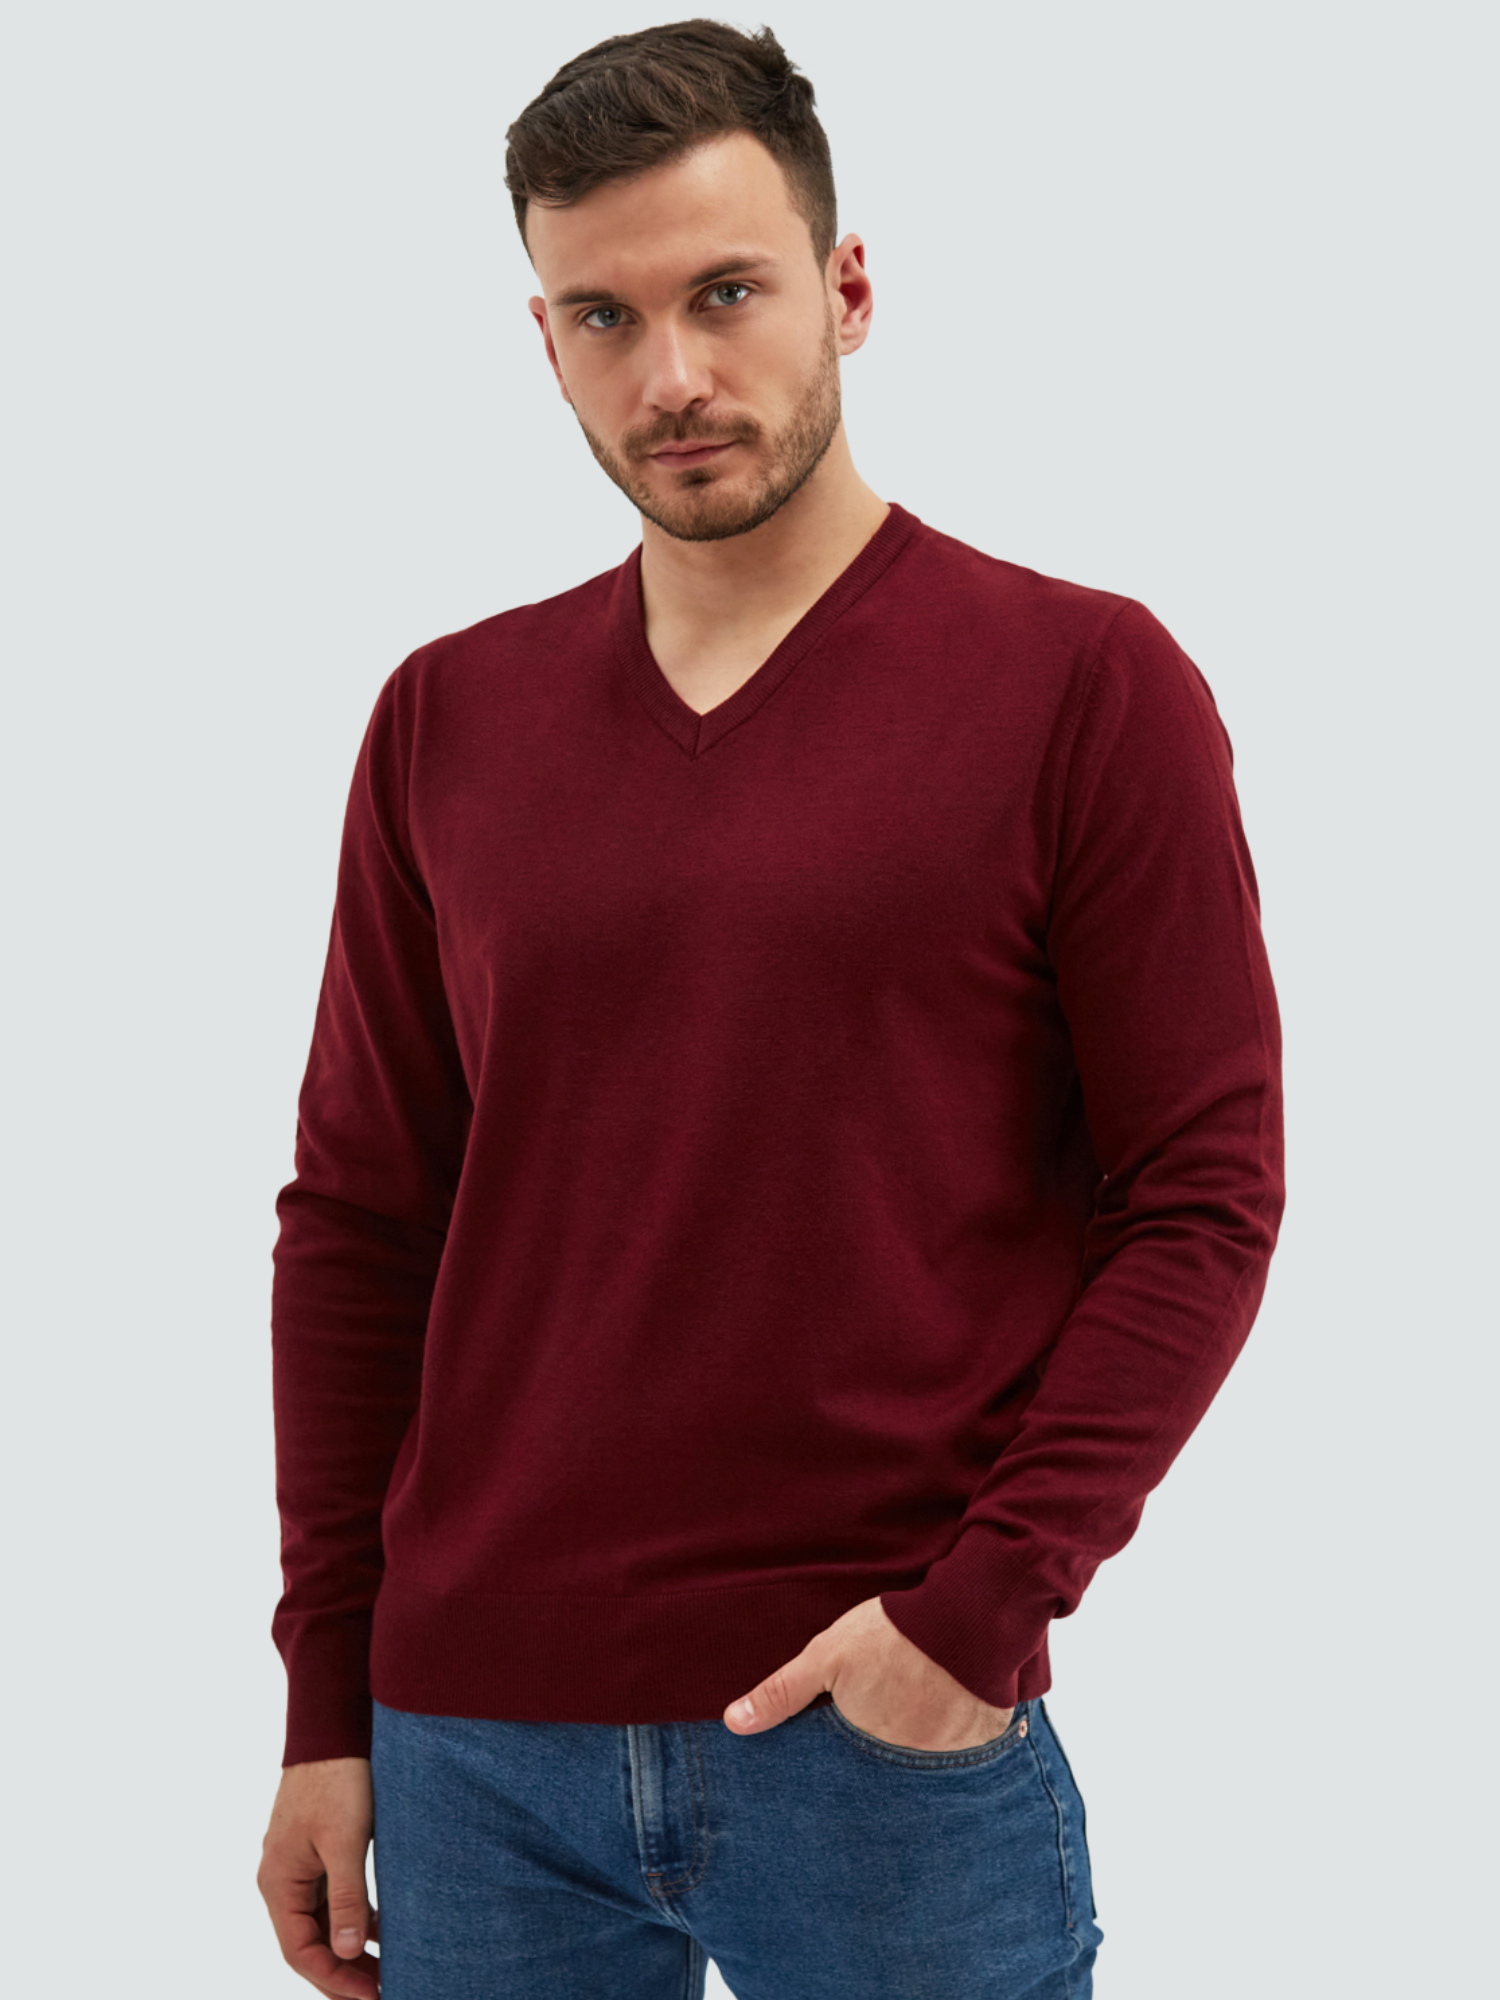 Пуловер мужской MANAFOFF 8106 красный XXXL